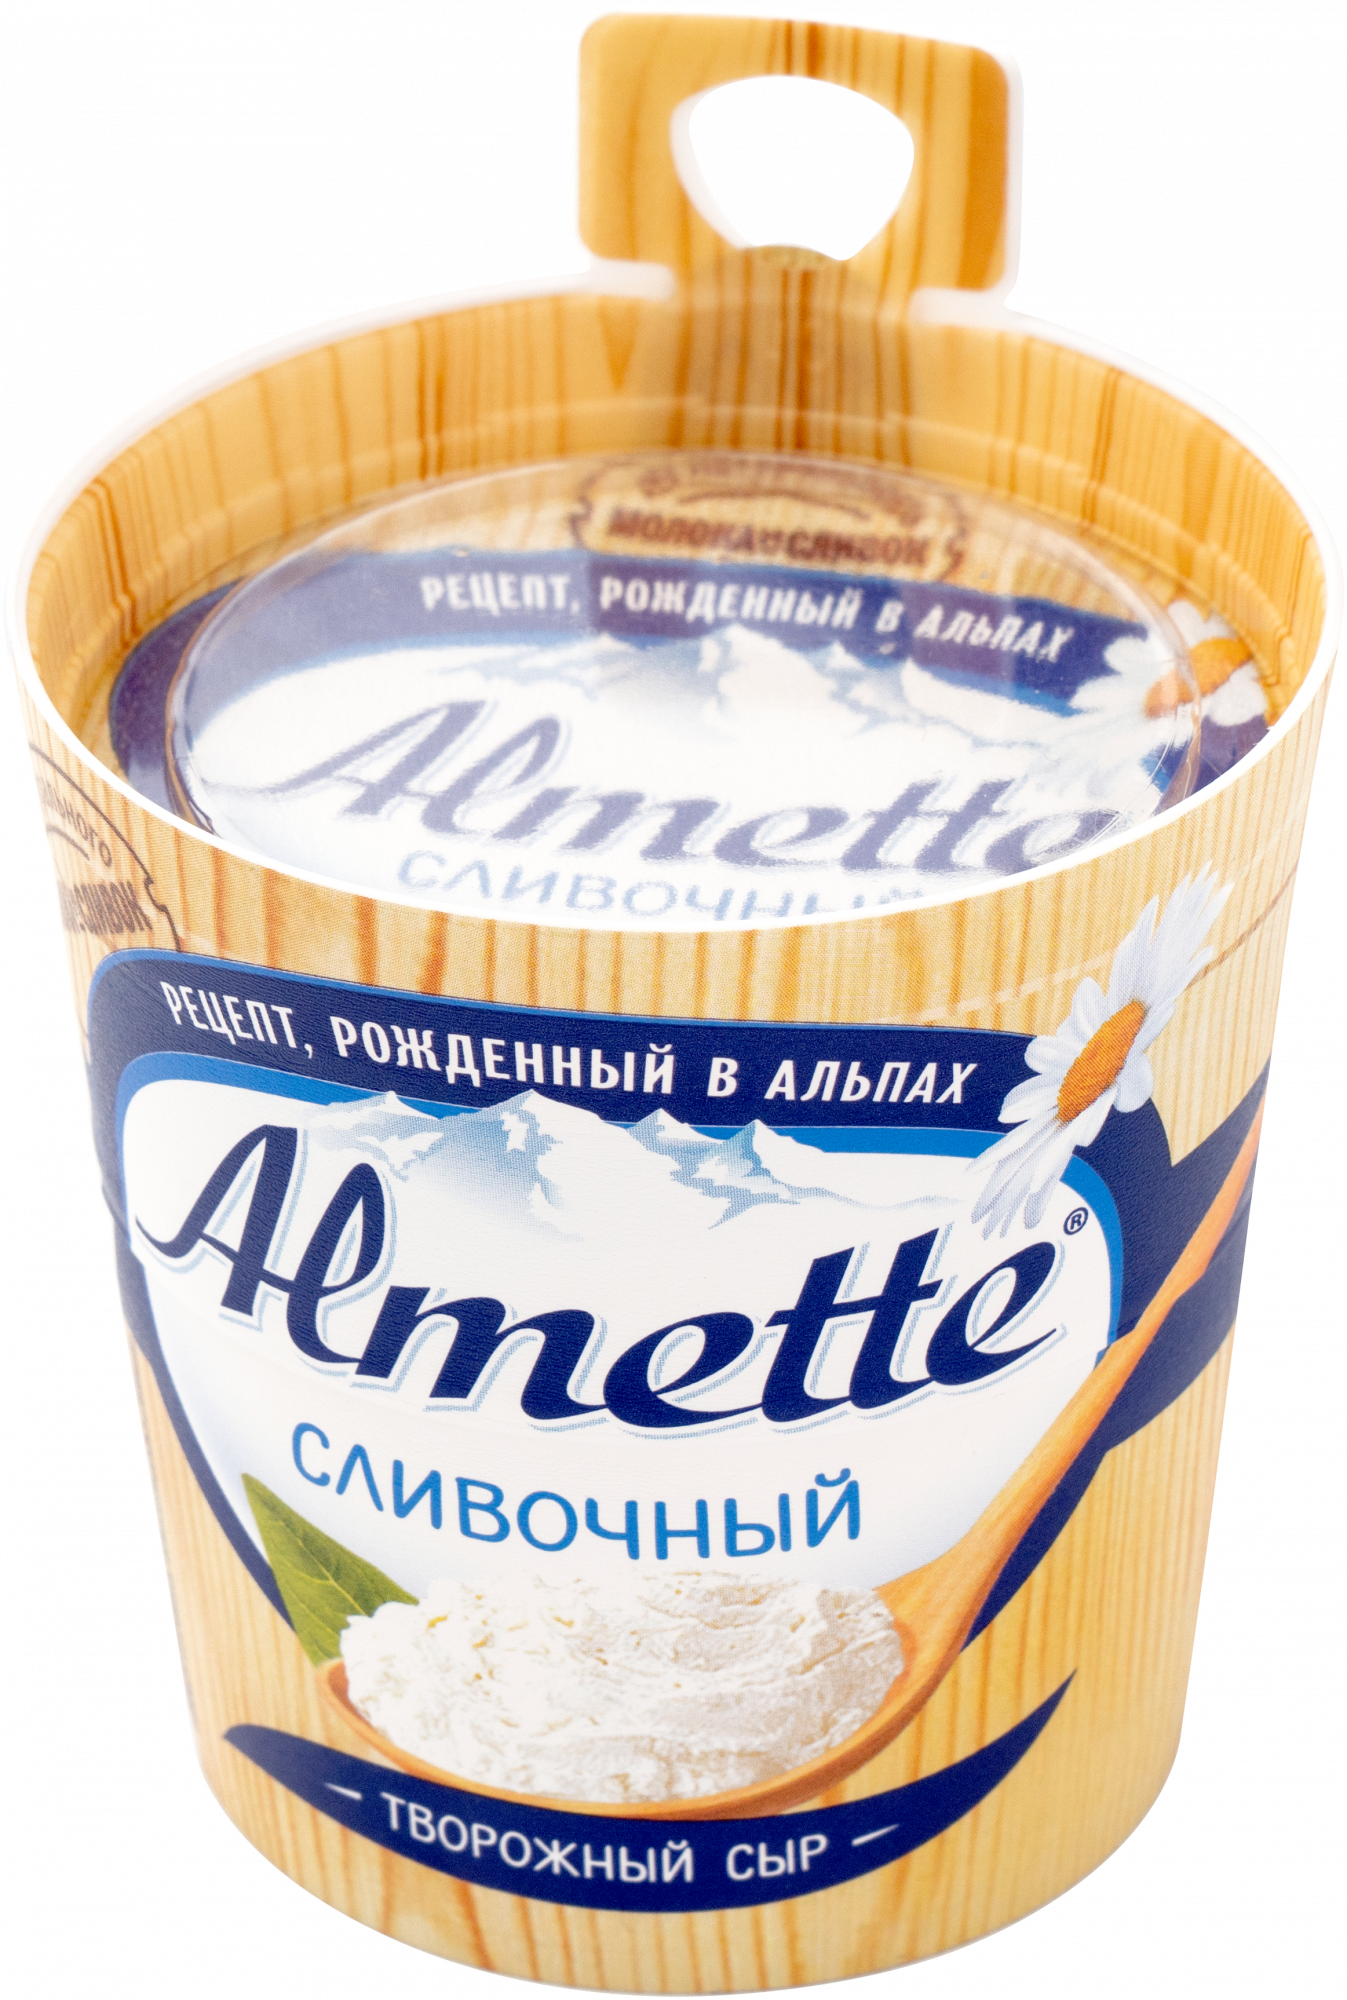 Сыр творож Альметте сливочный 150г шт - интернет-магазин Близнецы